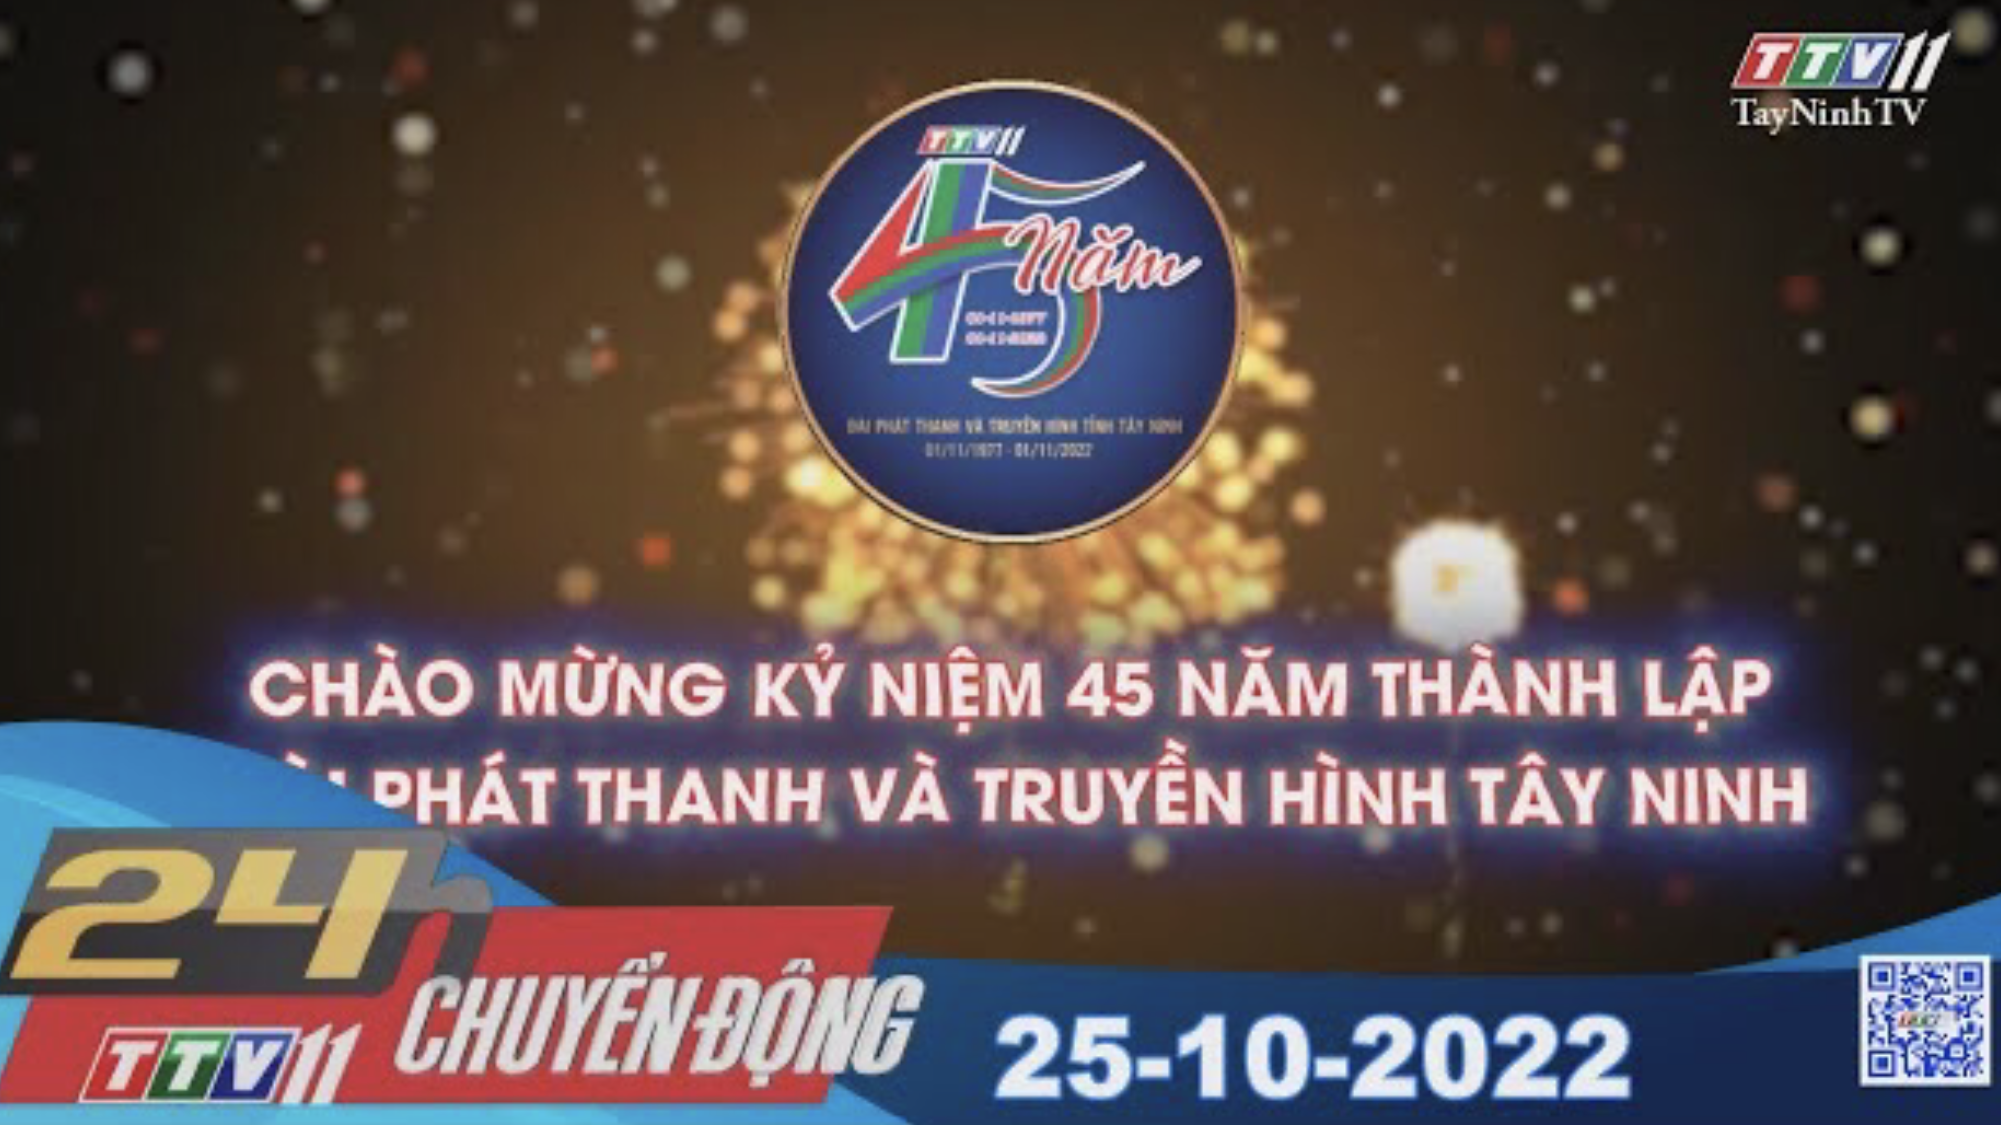 24h Chuyển động 25-10-2022 | Tin tức hôm nay | TayNinhTV